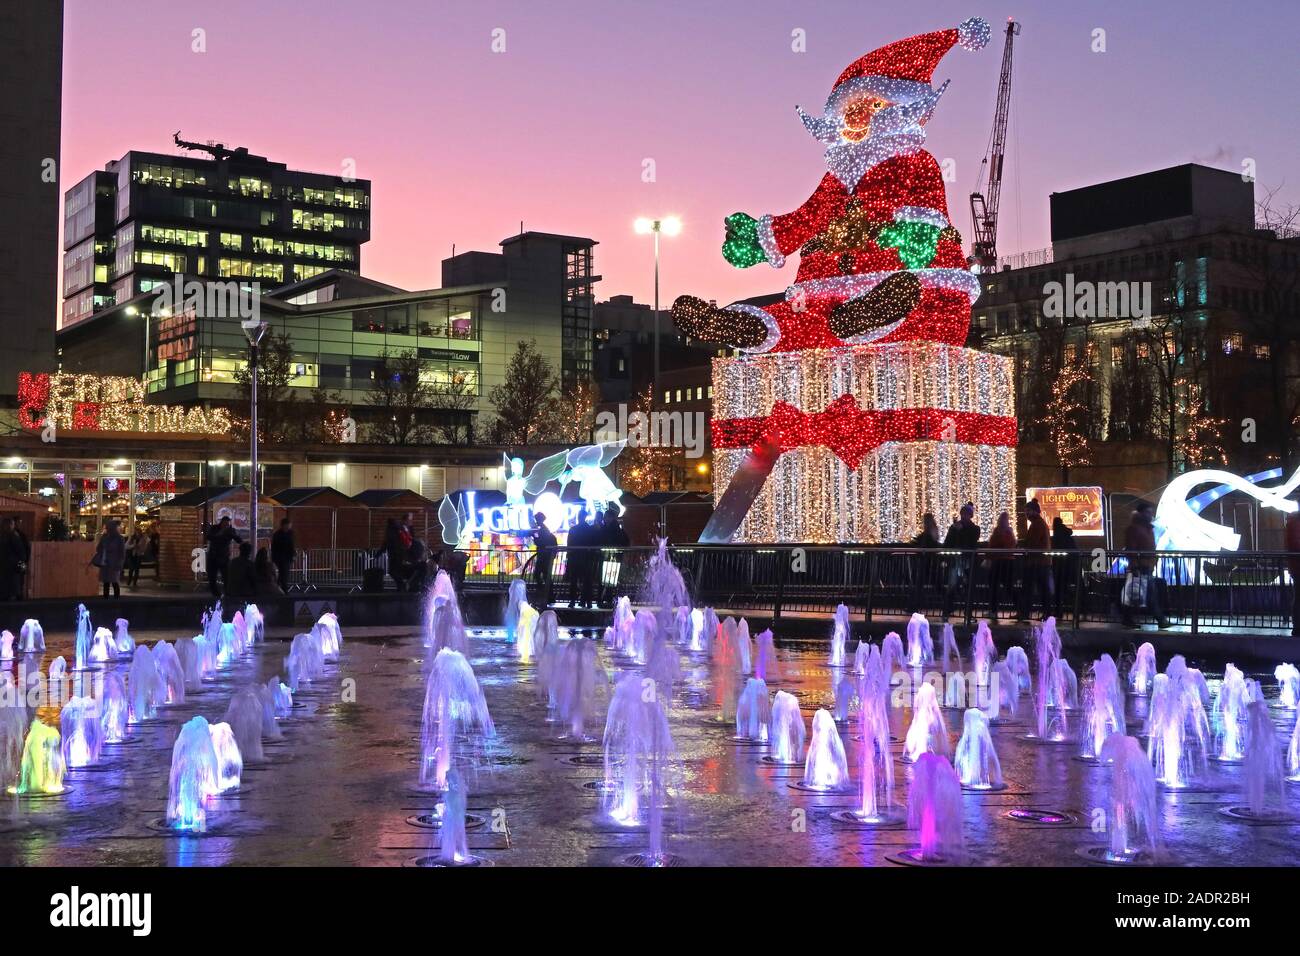 Joyeux Noël, de Piccadilly Gardens, Manchester, Angleterre, Royaume-Uni, M1 1RN - Père Noël au crépuscule Banque D'Images